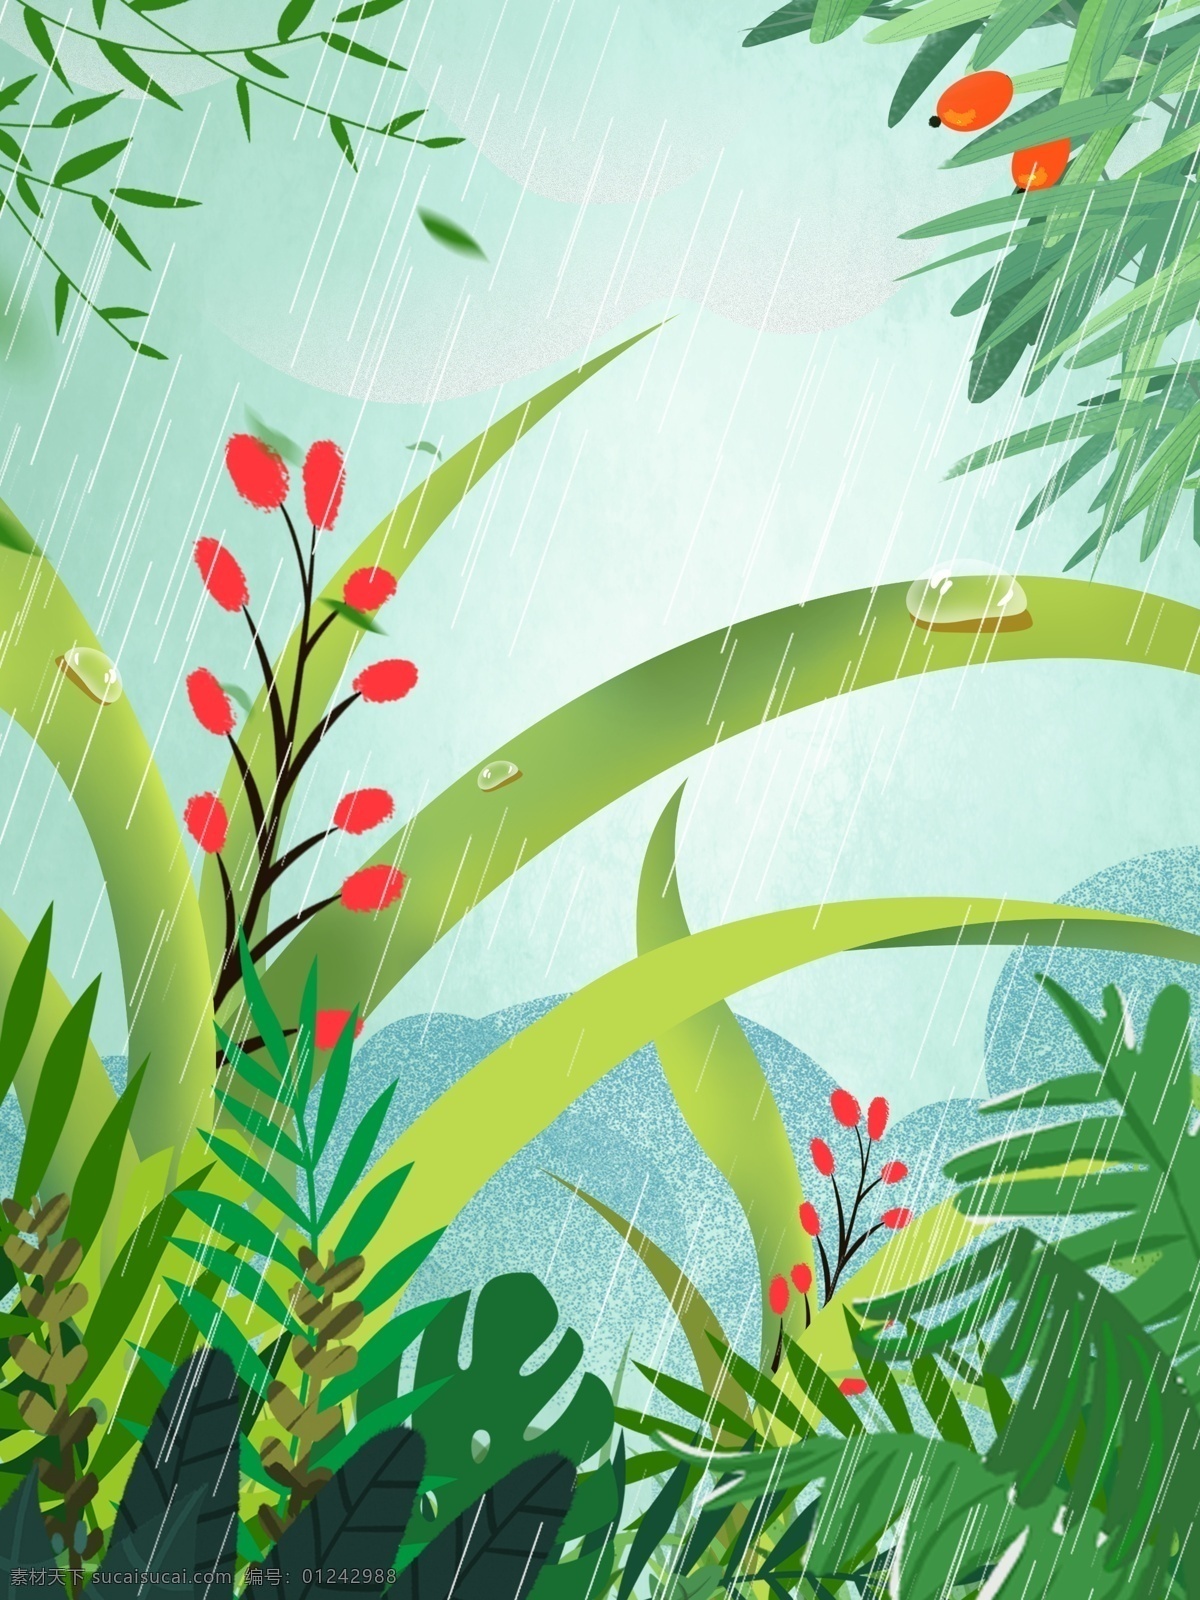 蓝色 雨水 节气 植物 背景 广告背景 背景素材 植物背景 psd背景 花卉背景 通用背景 卡通背景 下雨